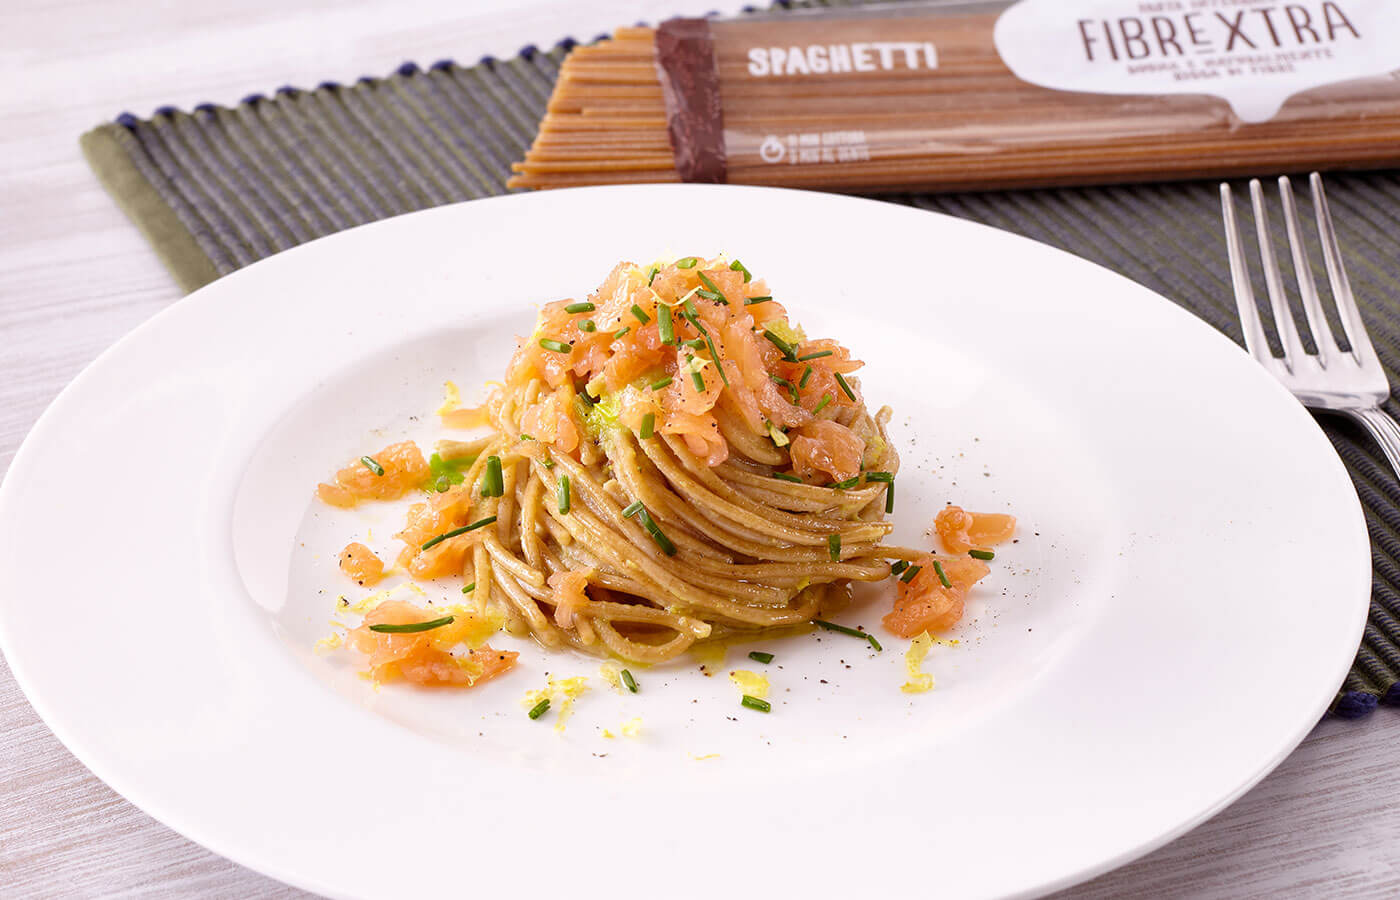 Spaghetti integrali Fibrextra con salmone e avocado